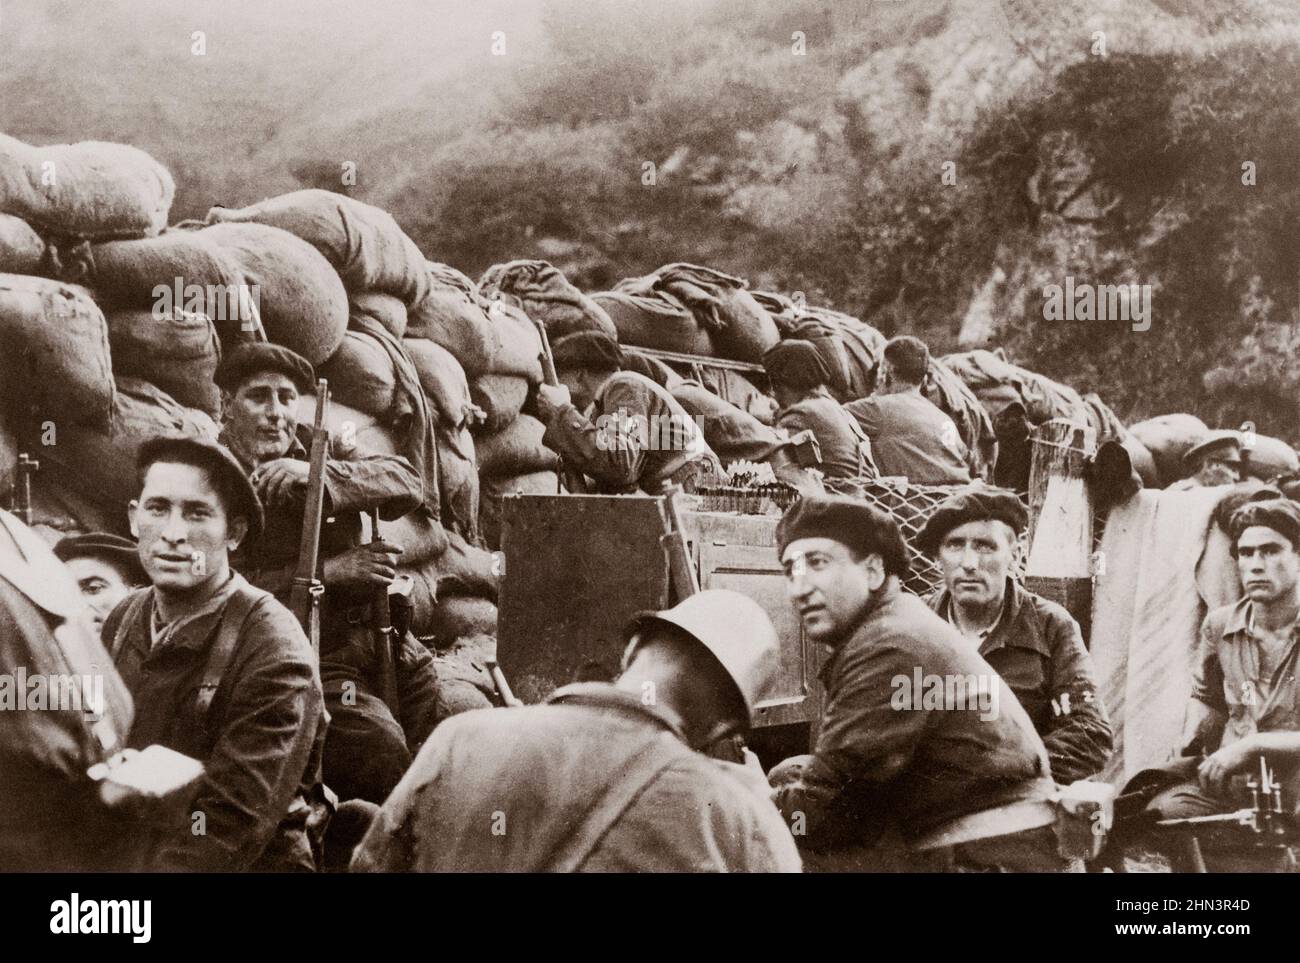 Foto de archivo de la Guerra Civil Española. Milicianos republicanos detrás de sacos de arena (Batalla de Irún). España. 1936 Foto de stock